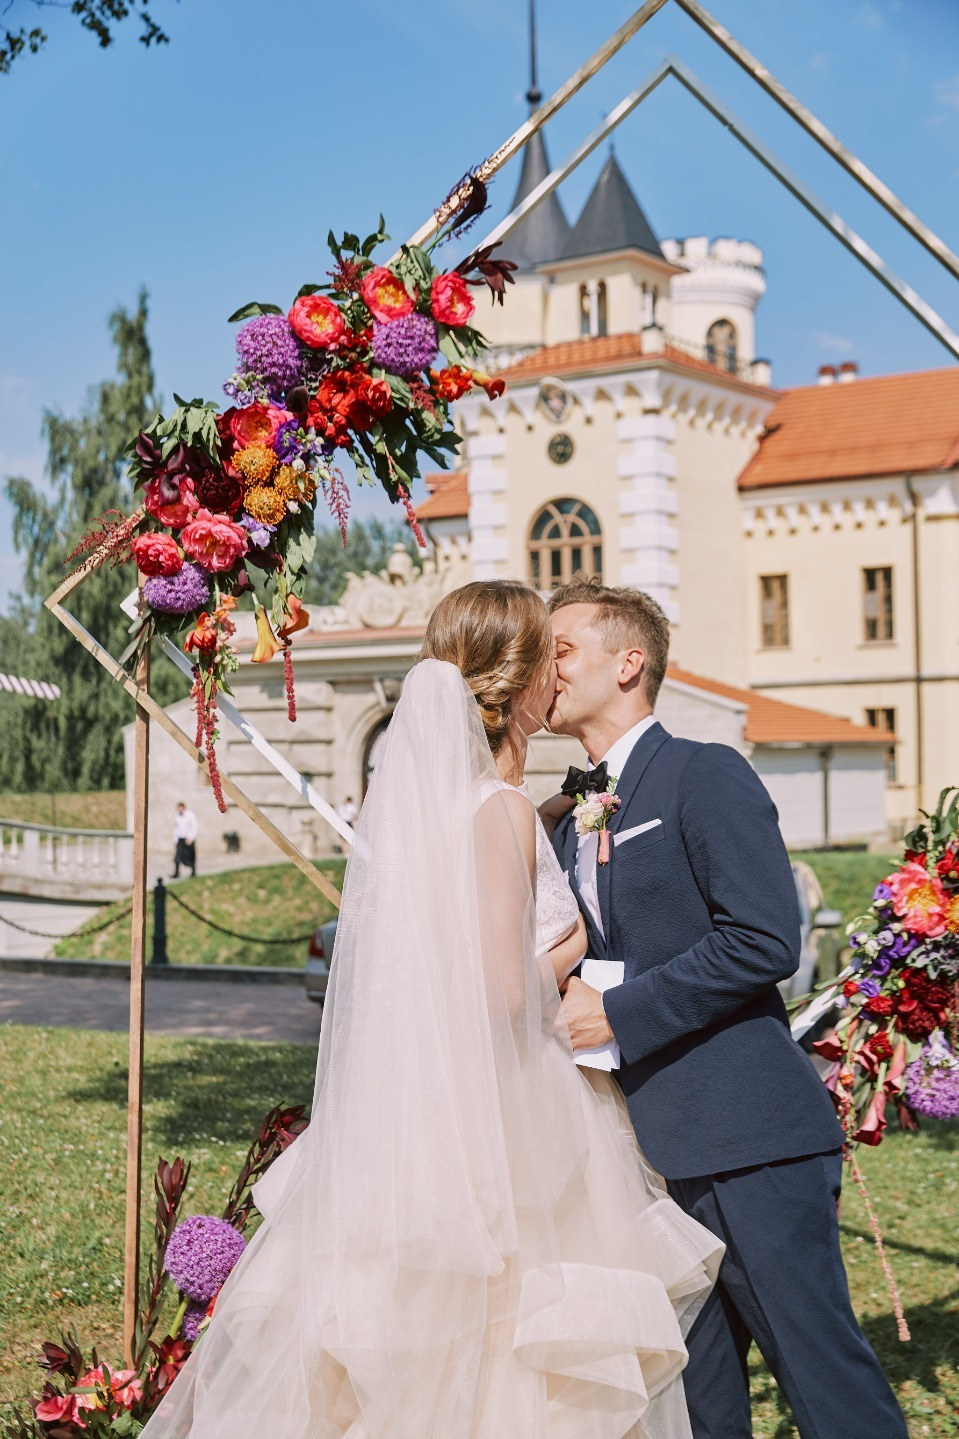 Как мы организовали свадьбу в стилистике русского авангарда